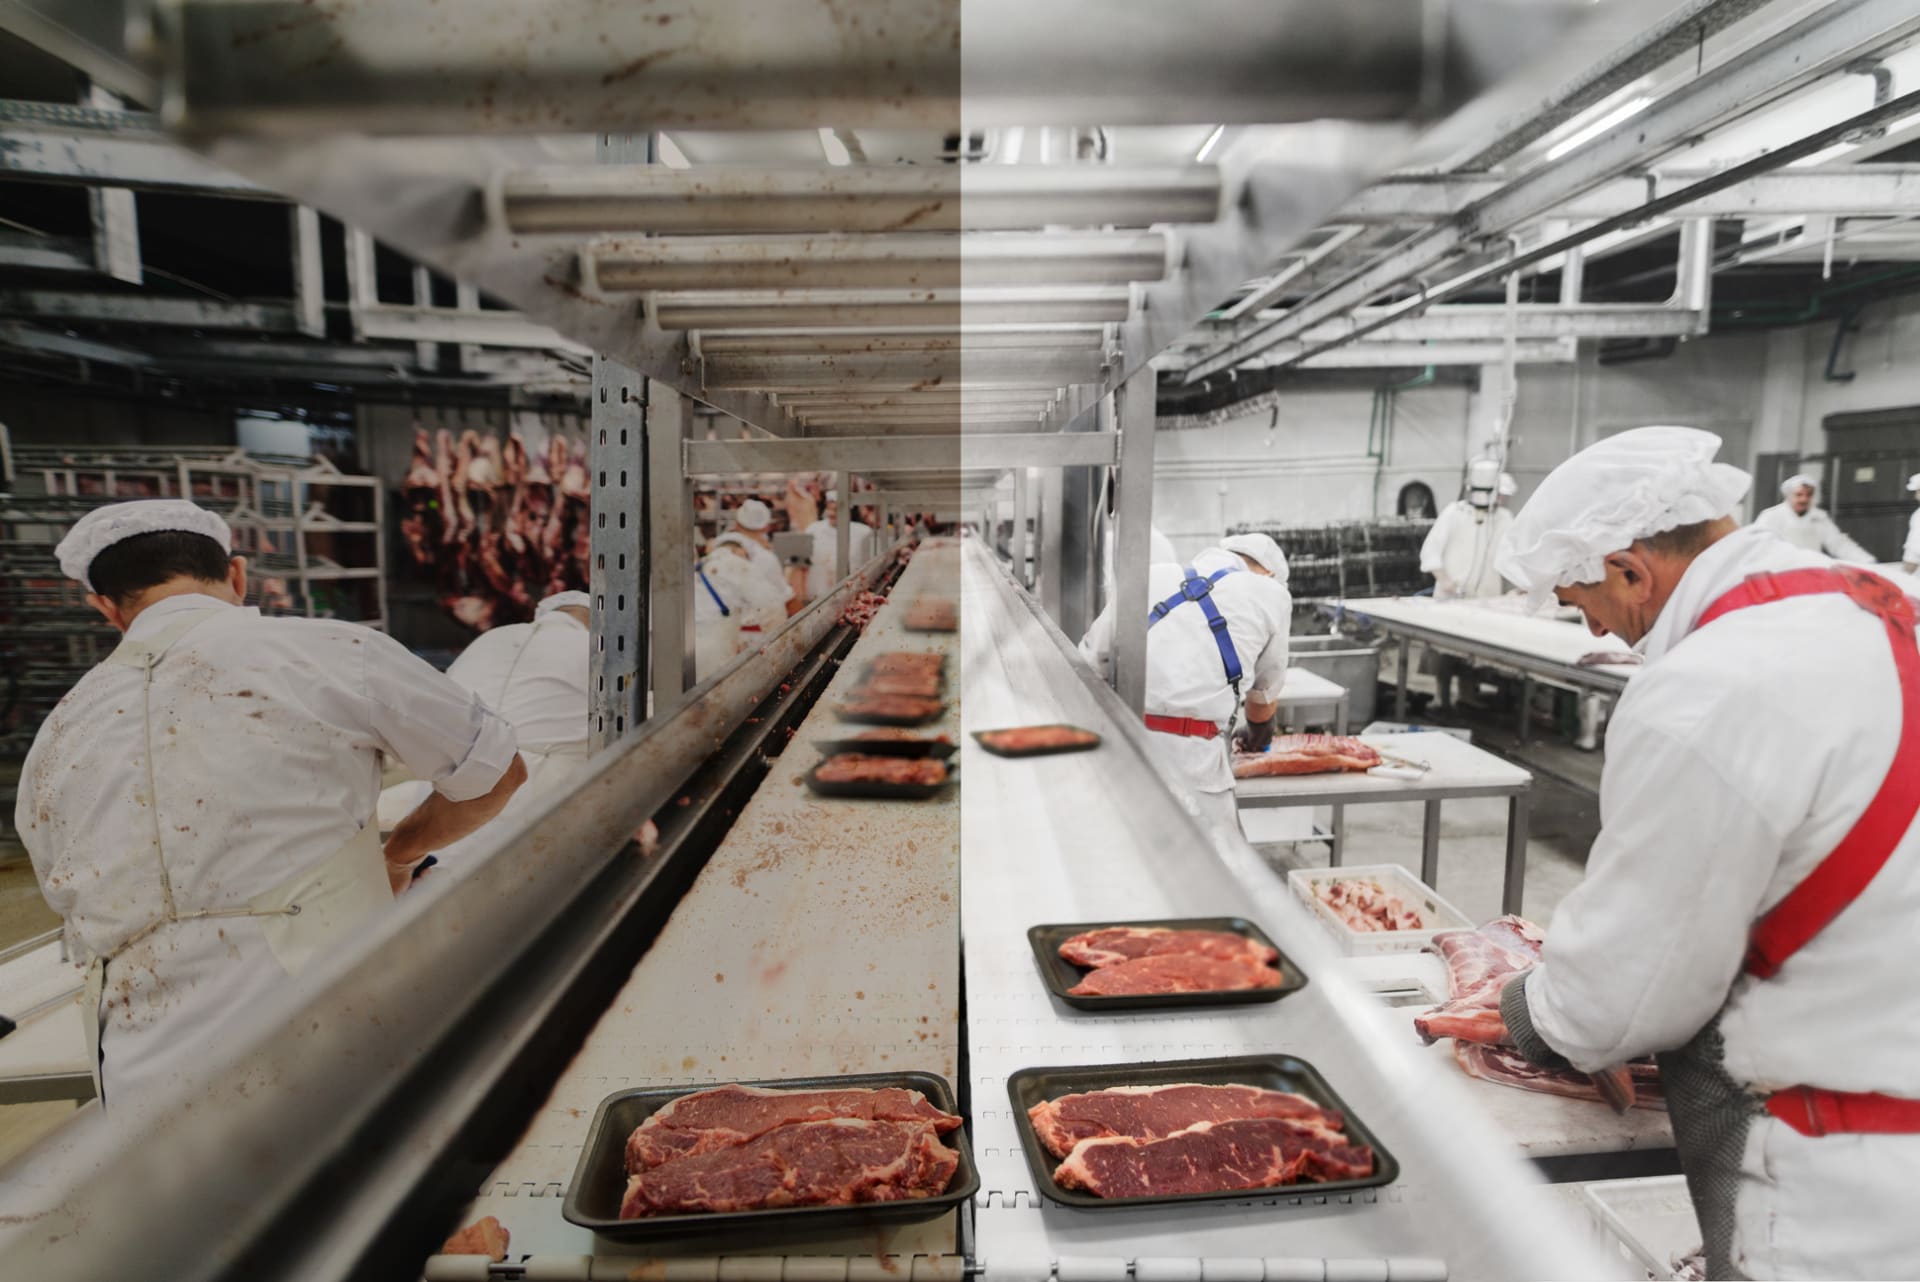 Comment prévenir les contaminations de l'industrie de la viande et de la chaine alimentaire